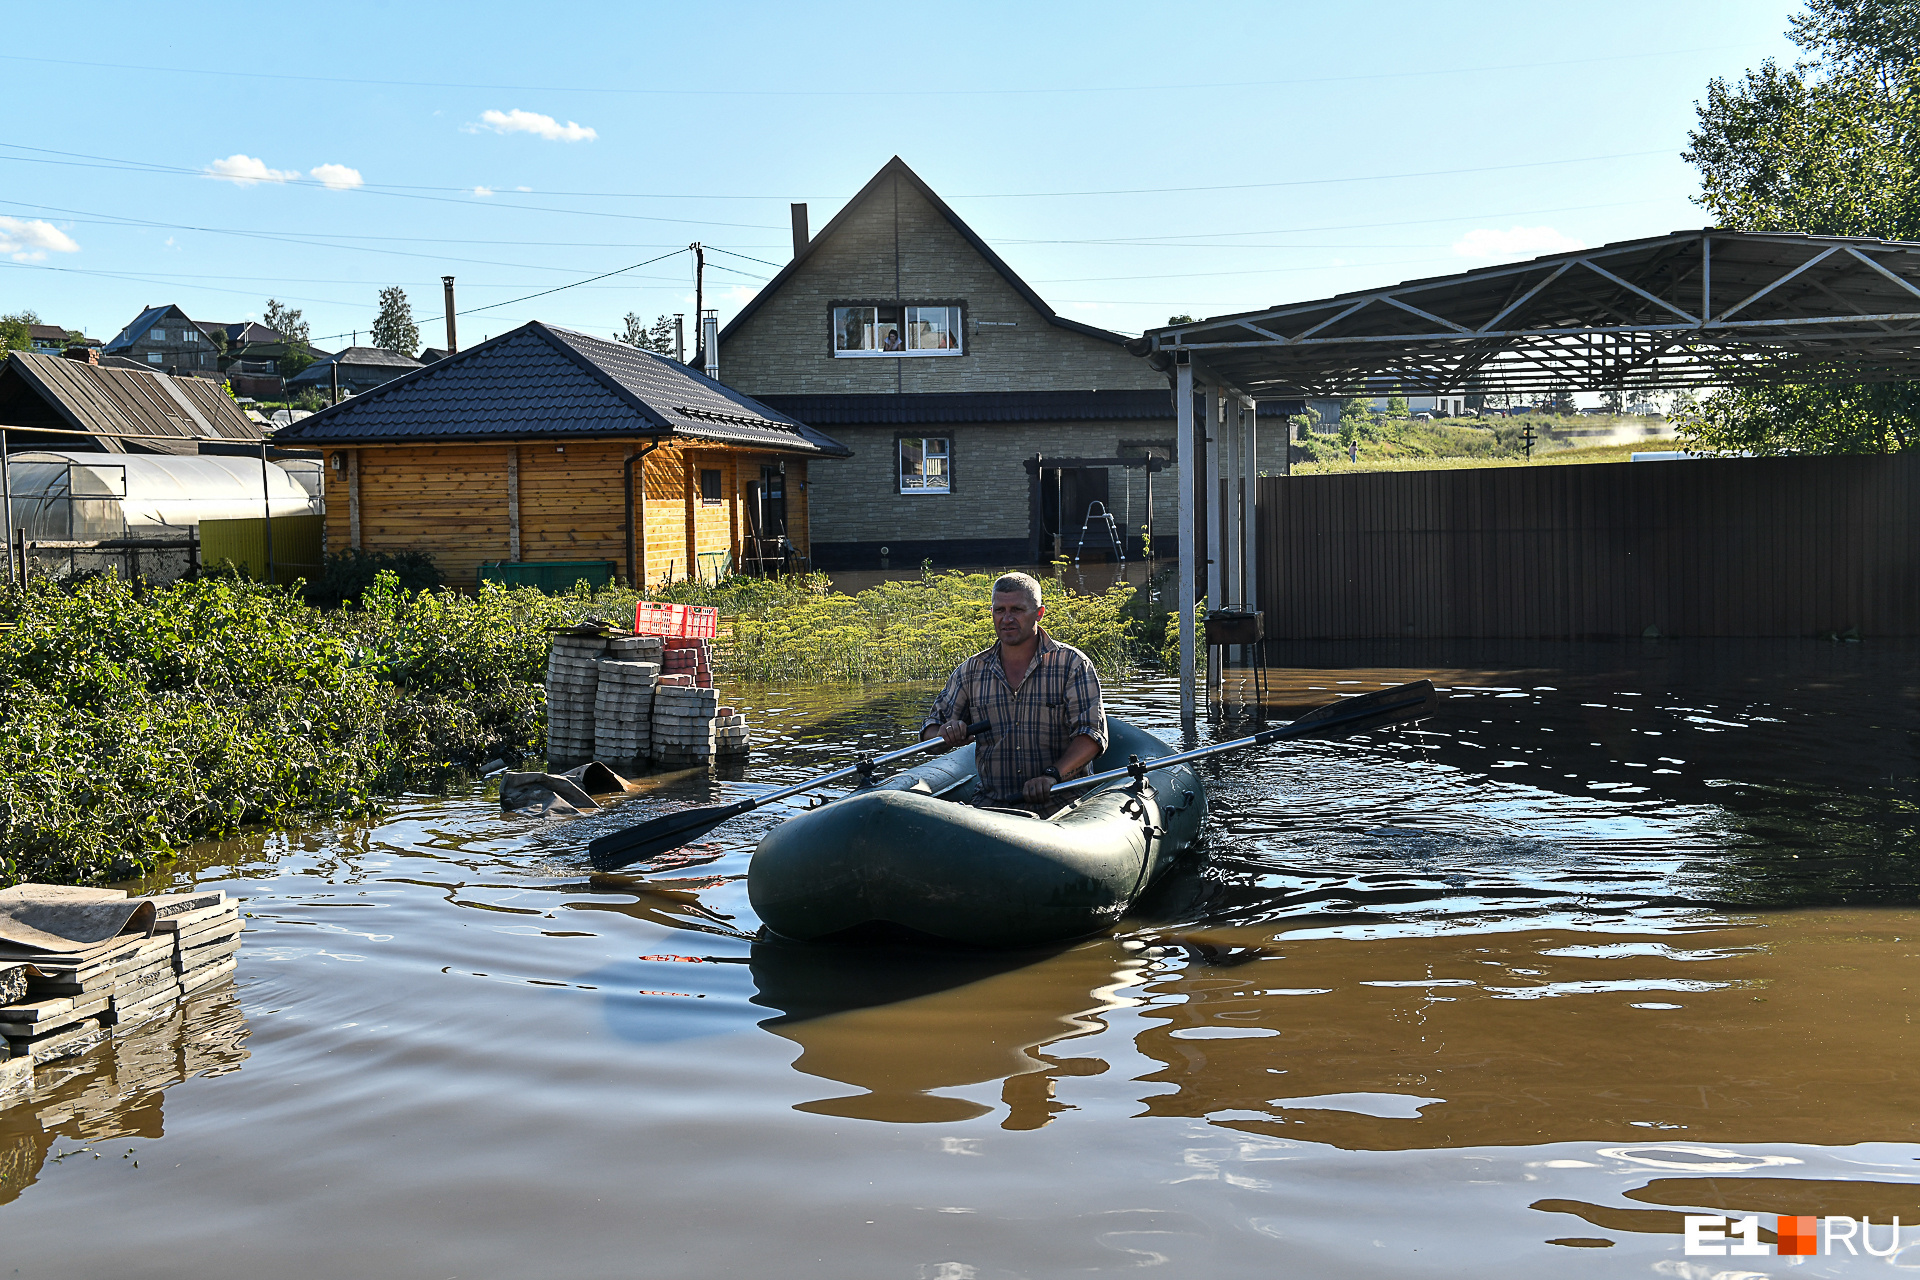 Многие салдинцы плавают по своему двору на лодках. Здесь компенсации даже в 300 тысяч рублей явно недостаточно для возмещения ущерба. Хозяин только что обновил дом и баню